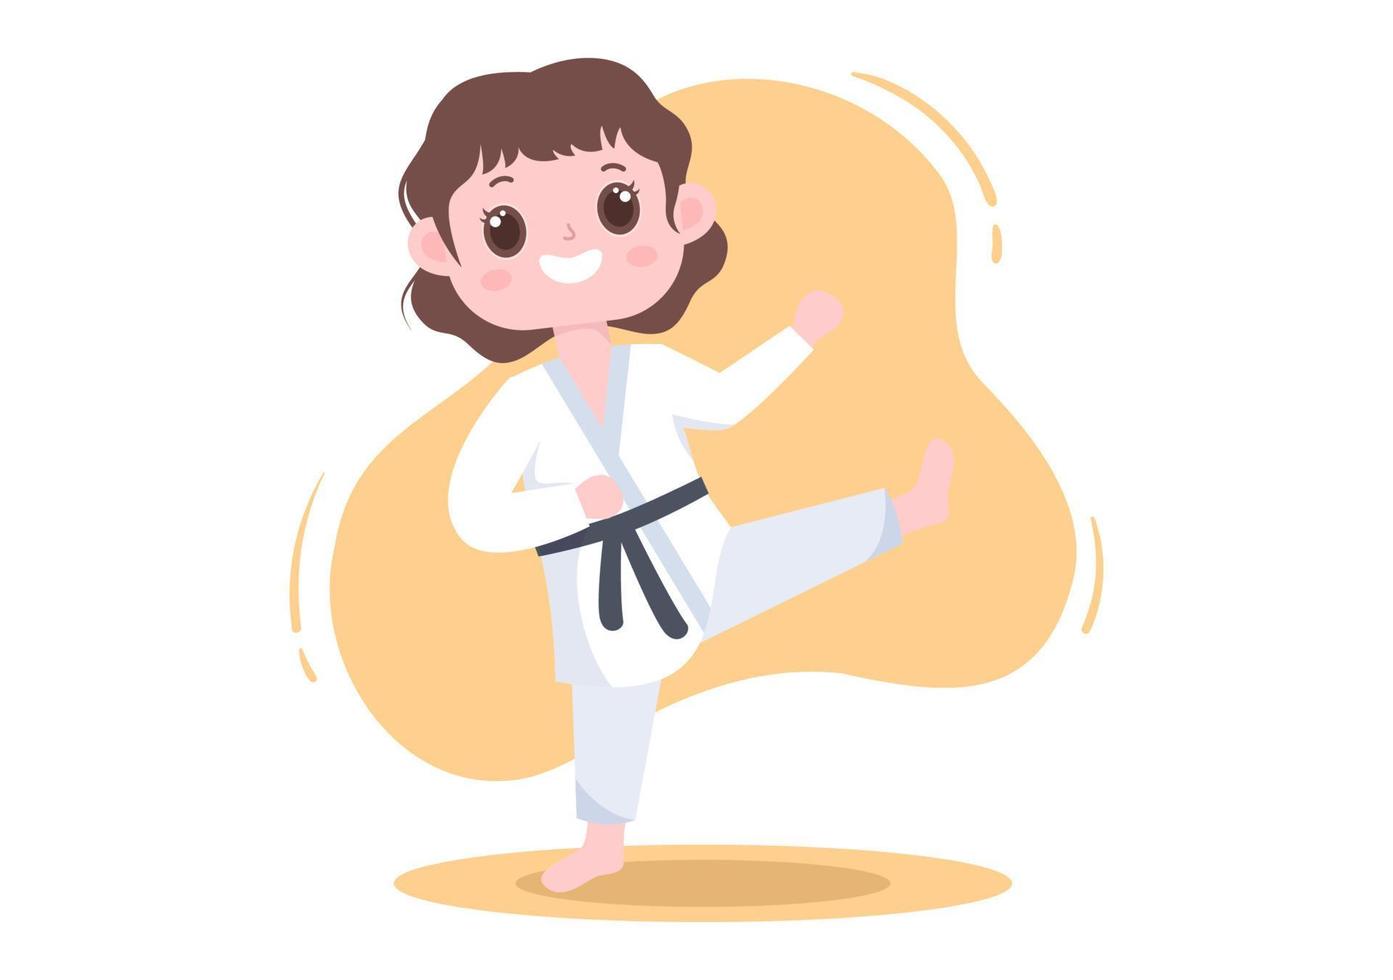 lindos niños de dibujos animados haciendo algunos movimientos básicos de artes marciales de karate, pose de lucha y usando kimono en ilustración de vector de fondo de estilo plano